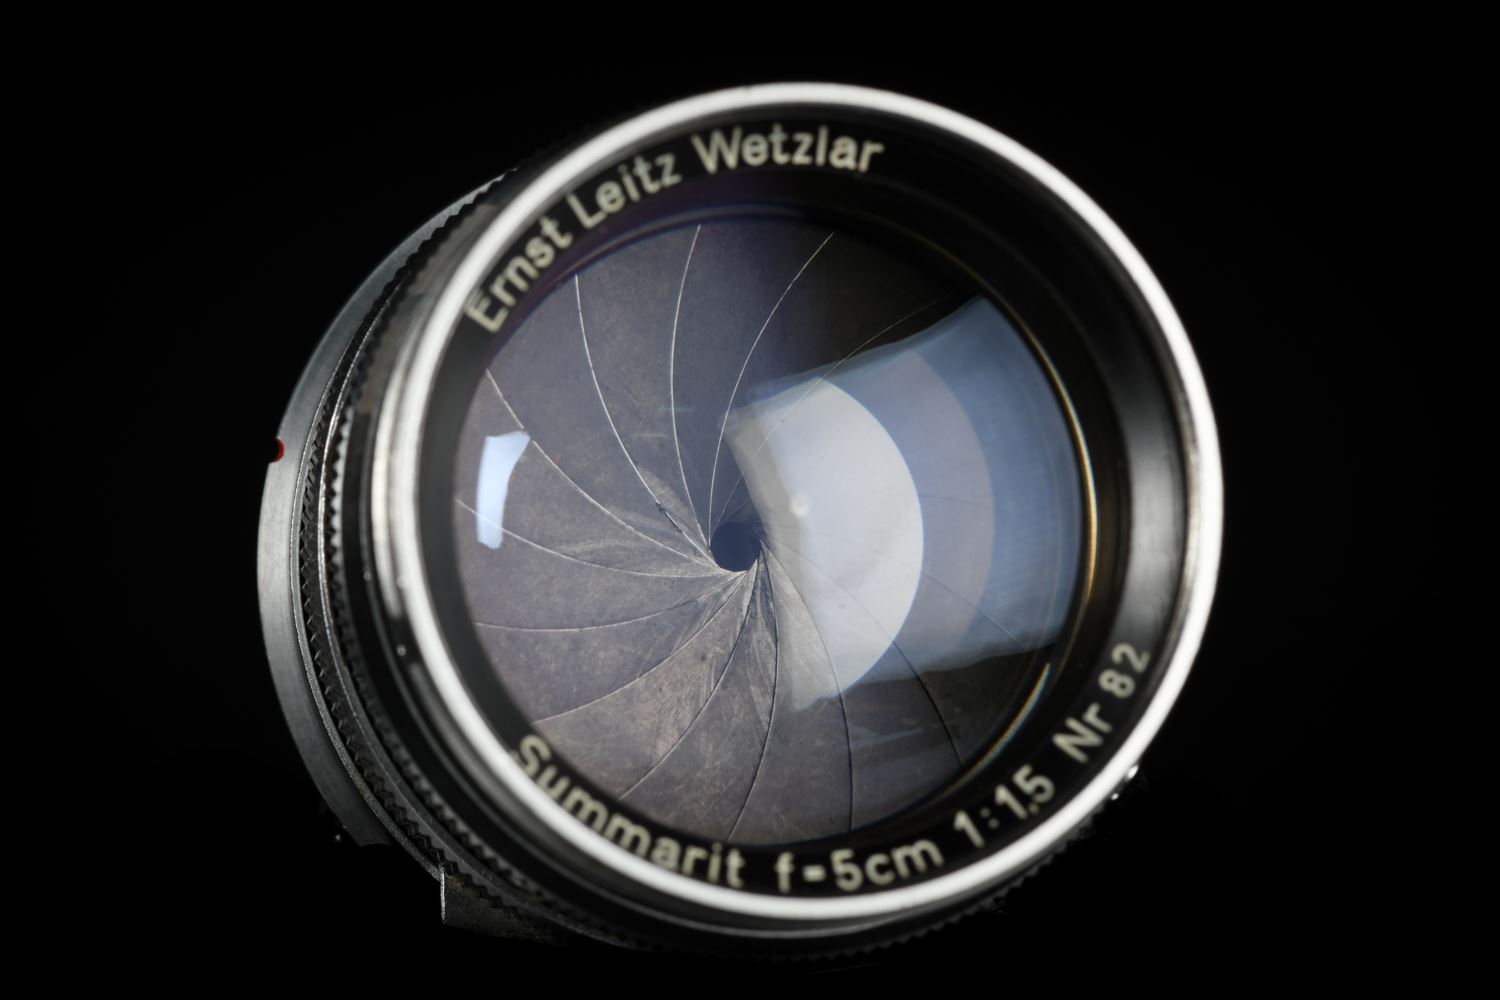 Picture of Leica Summarit 5cm f/1.5 Screw LTM with LTM Ring